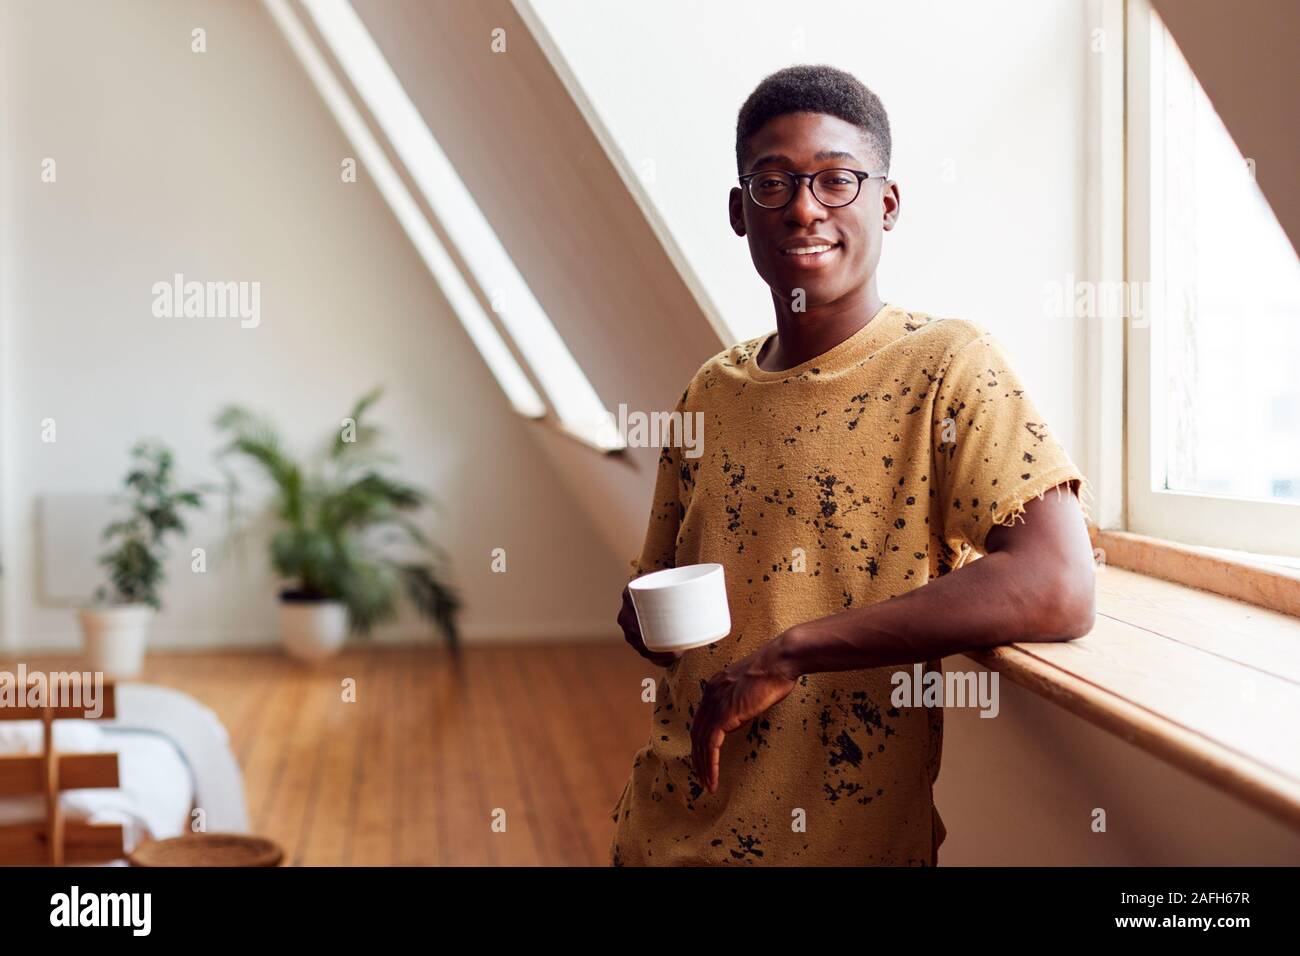 Portrait des jungen Mannes, Entspannen im Loft Apartment mit heißen Getränken Stockfoto